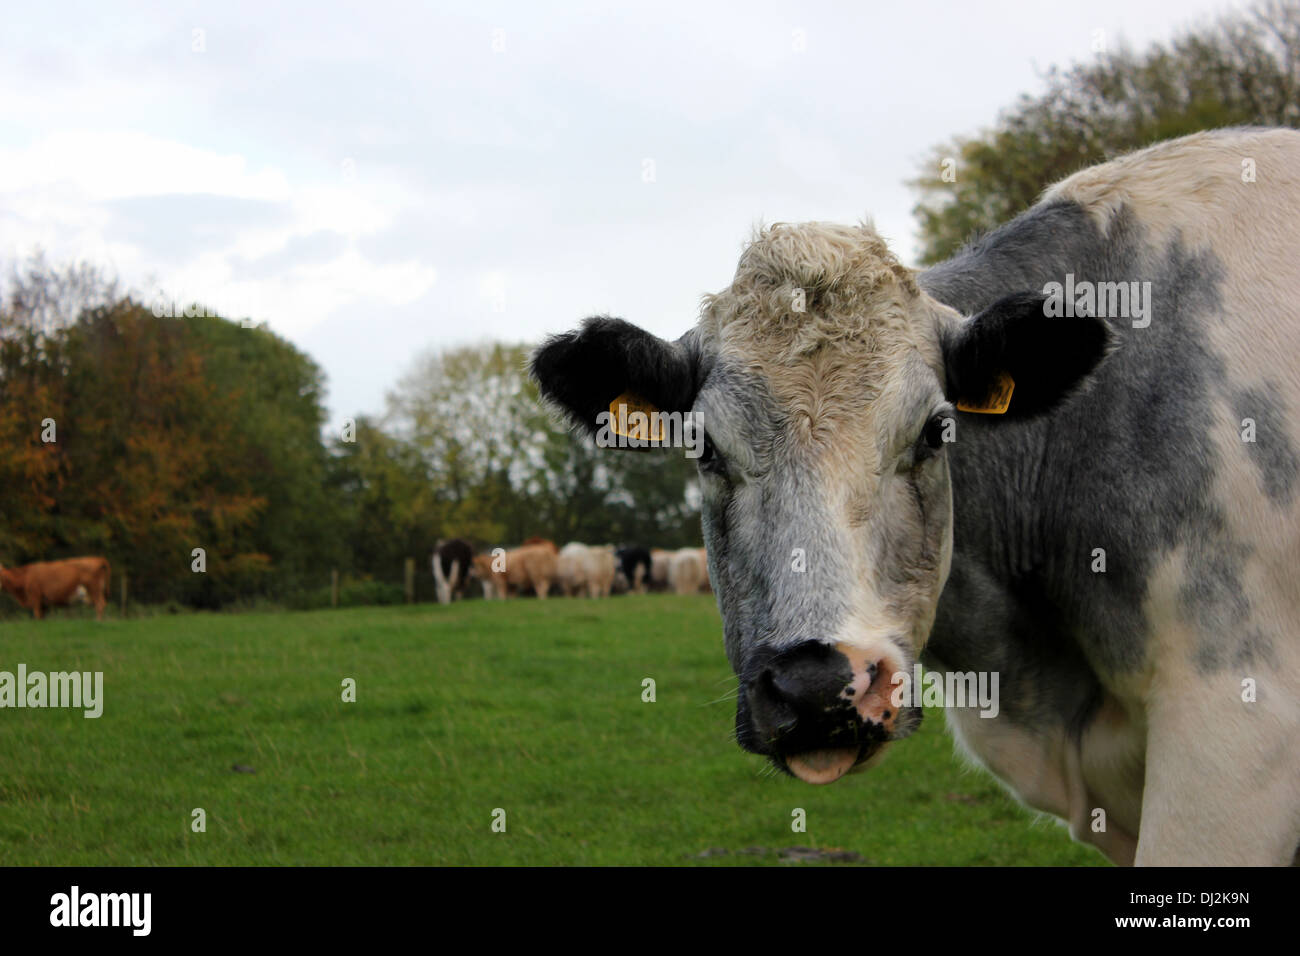 Per vacca da latte al pascolo si ferma a guardare la fotocamera, rivelando il suo orecchio tags che sono utilizzati per scopi di identificazione. Foto Stock